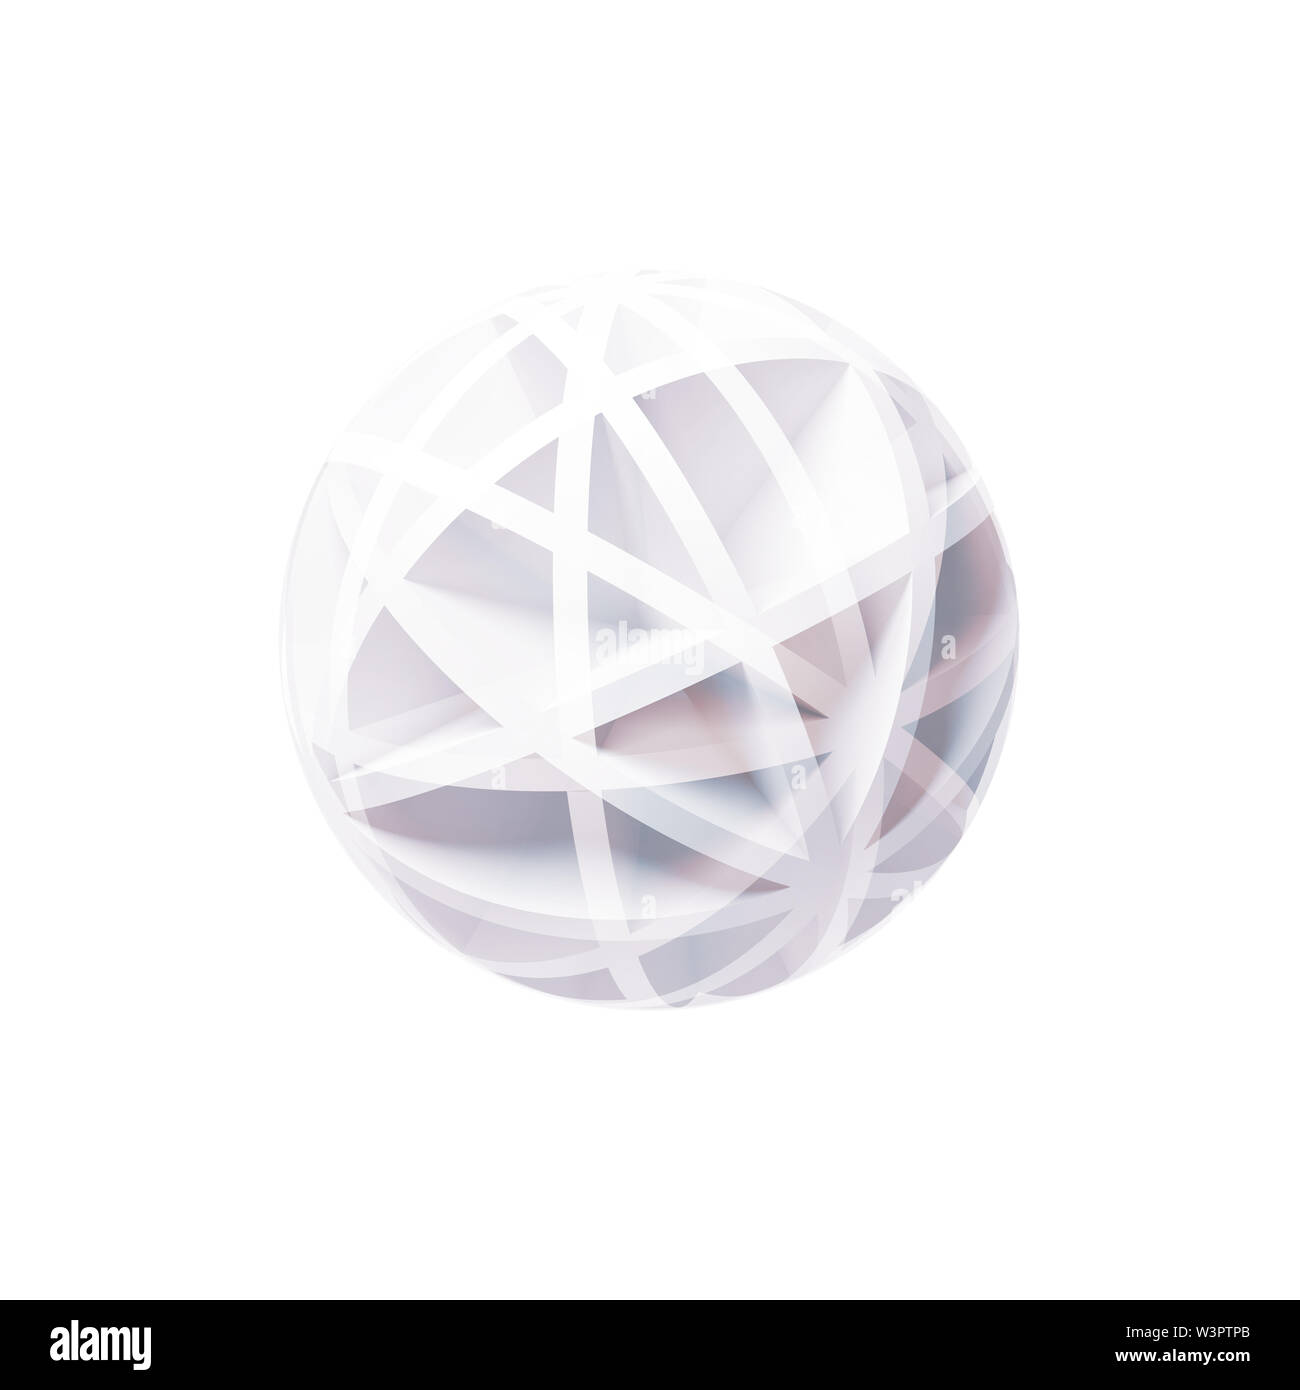 Resumen de objeto digital esférico blanco aislado sobre fondo blanco, cuadrado 3D rendering ilustración Foto de stock